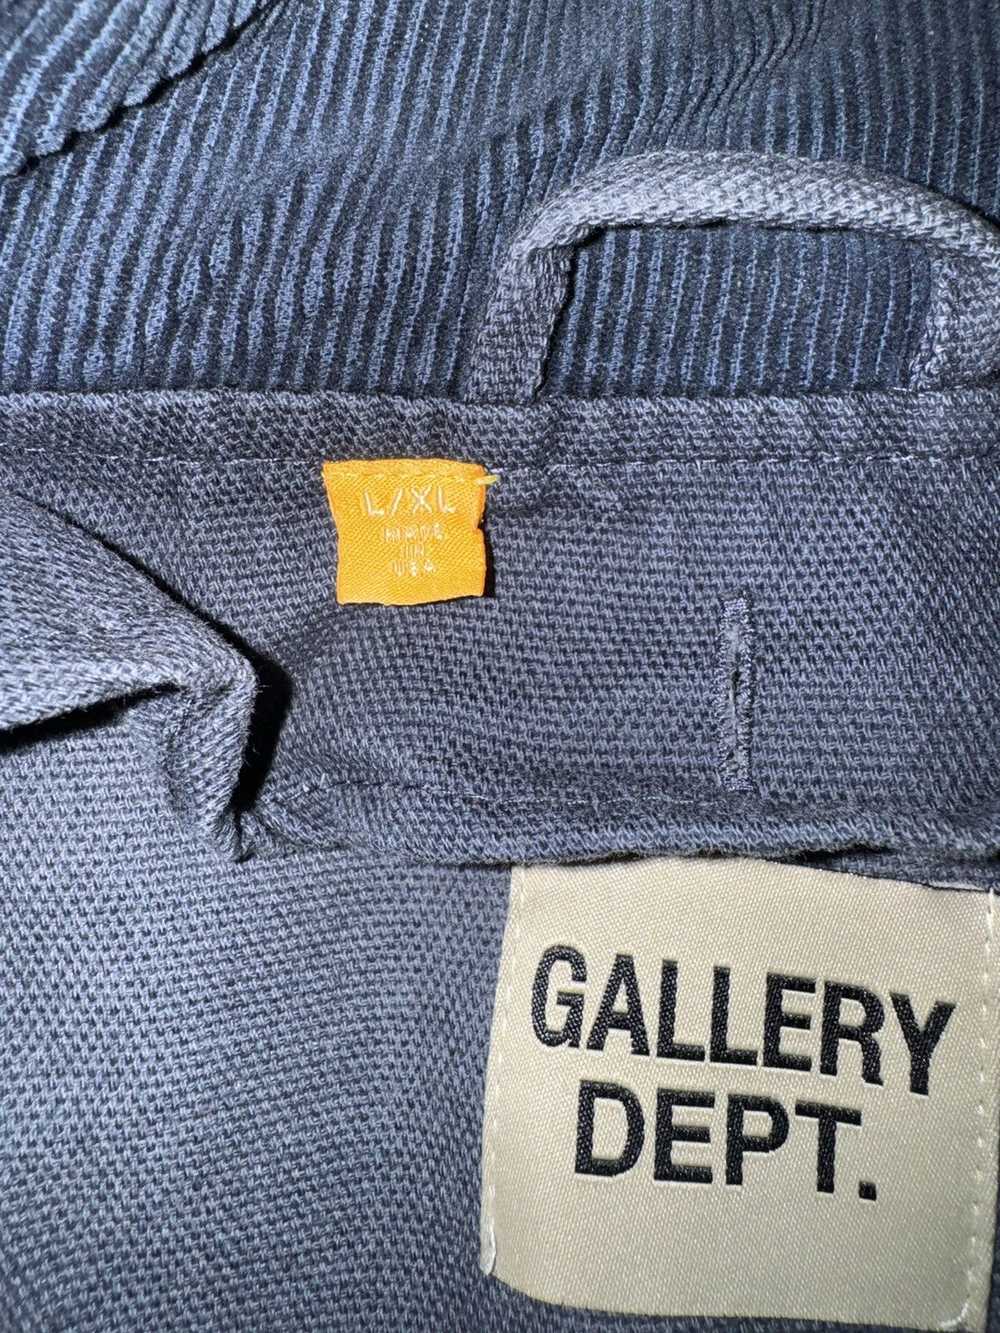 Gallery Dept. Gallery Dept Jacket - image 4